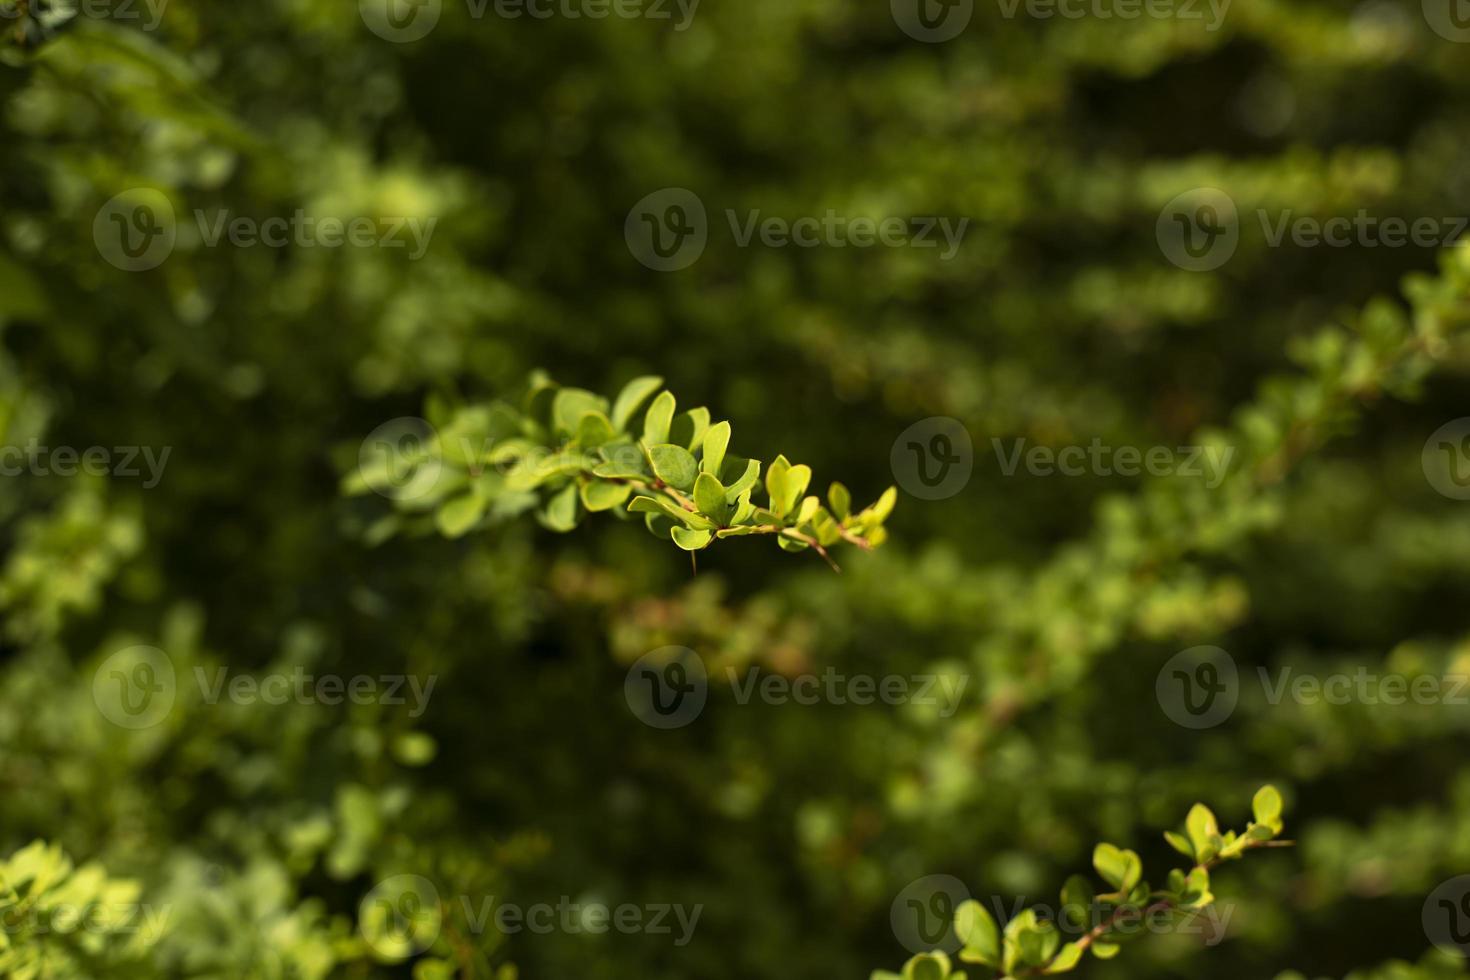 arbusto verde. galhos finos com folhas pequenas. detalhes da natureza no parque. foto